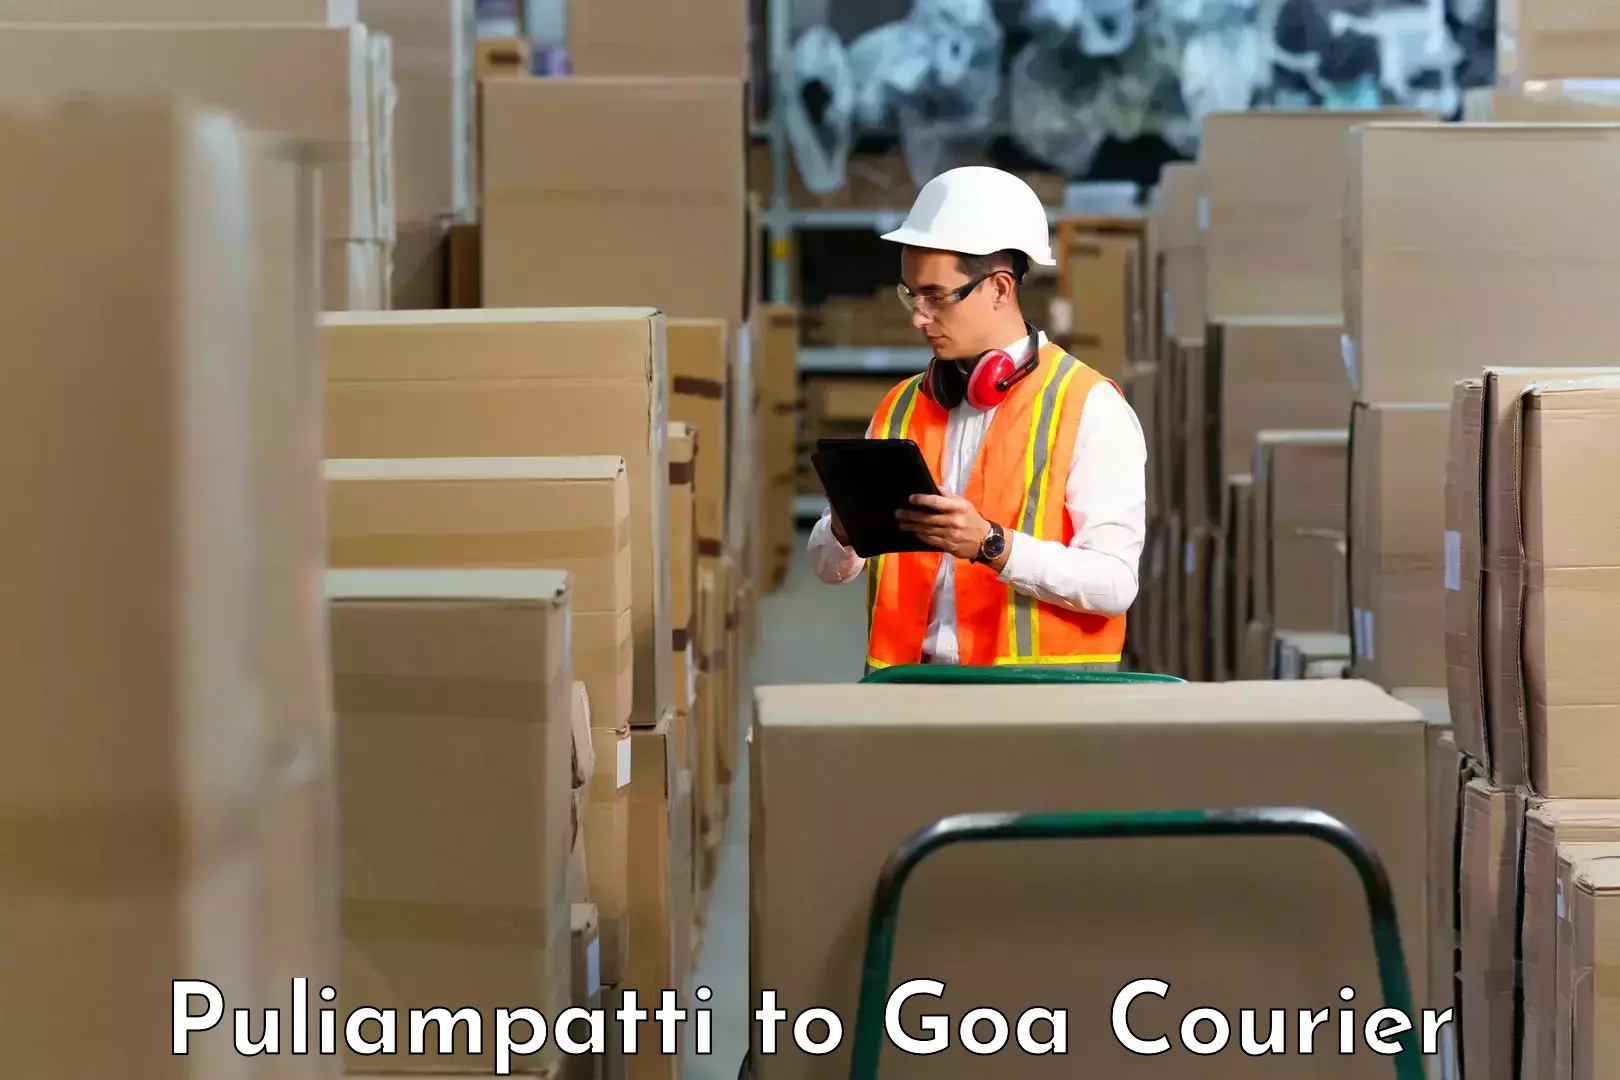 Customer-centric shipping Puliampatti to NIT Goa